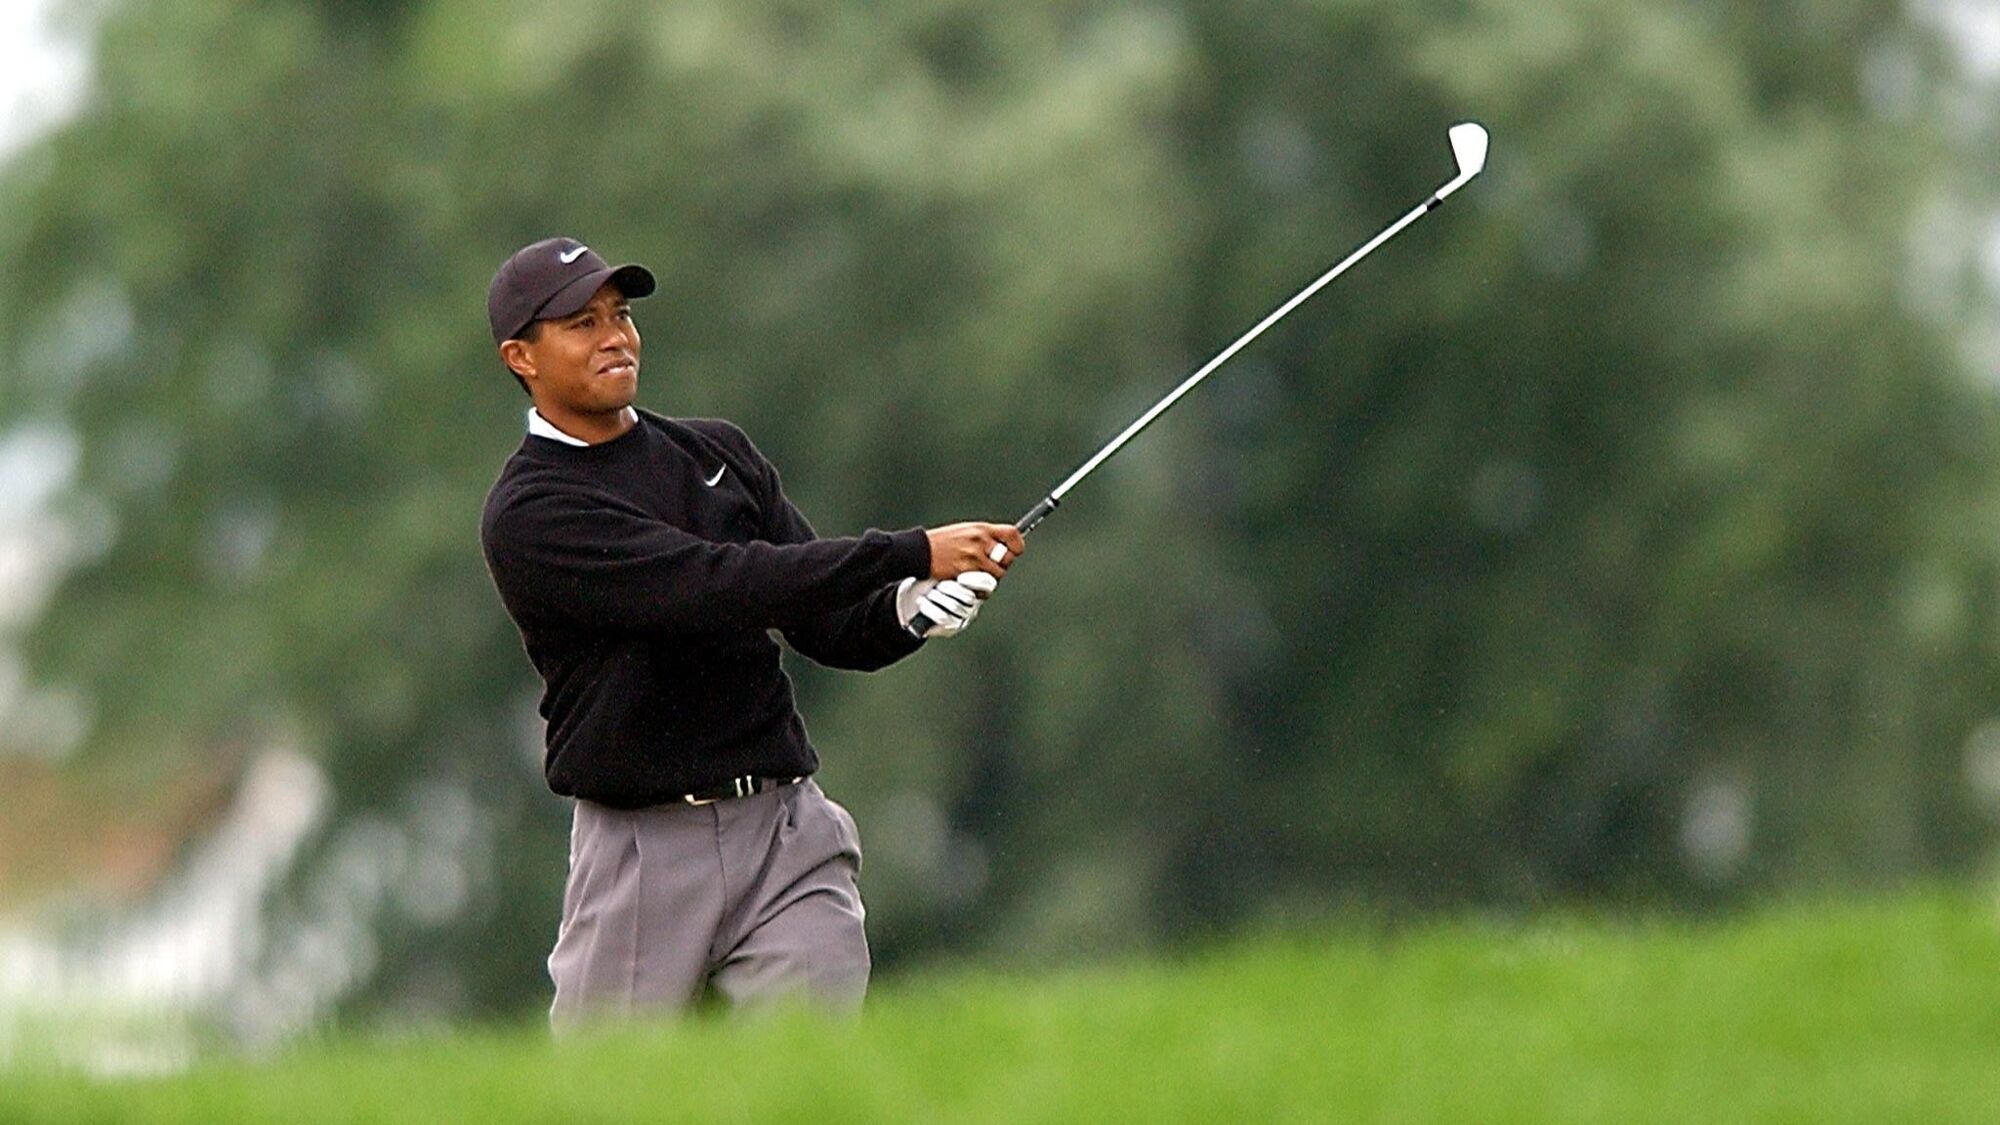 Hét allerbeste shot ooit van Tiger Woods